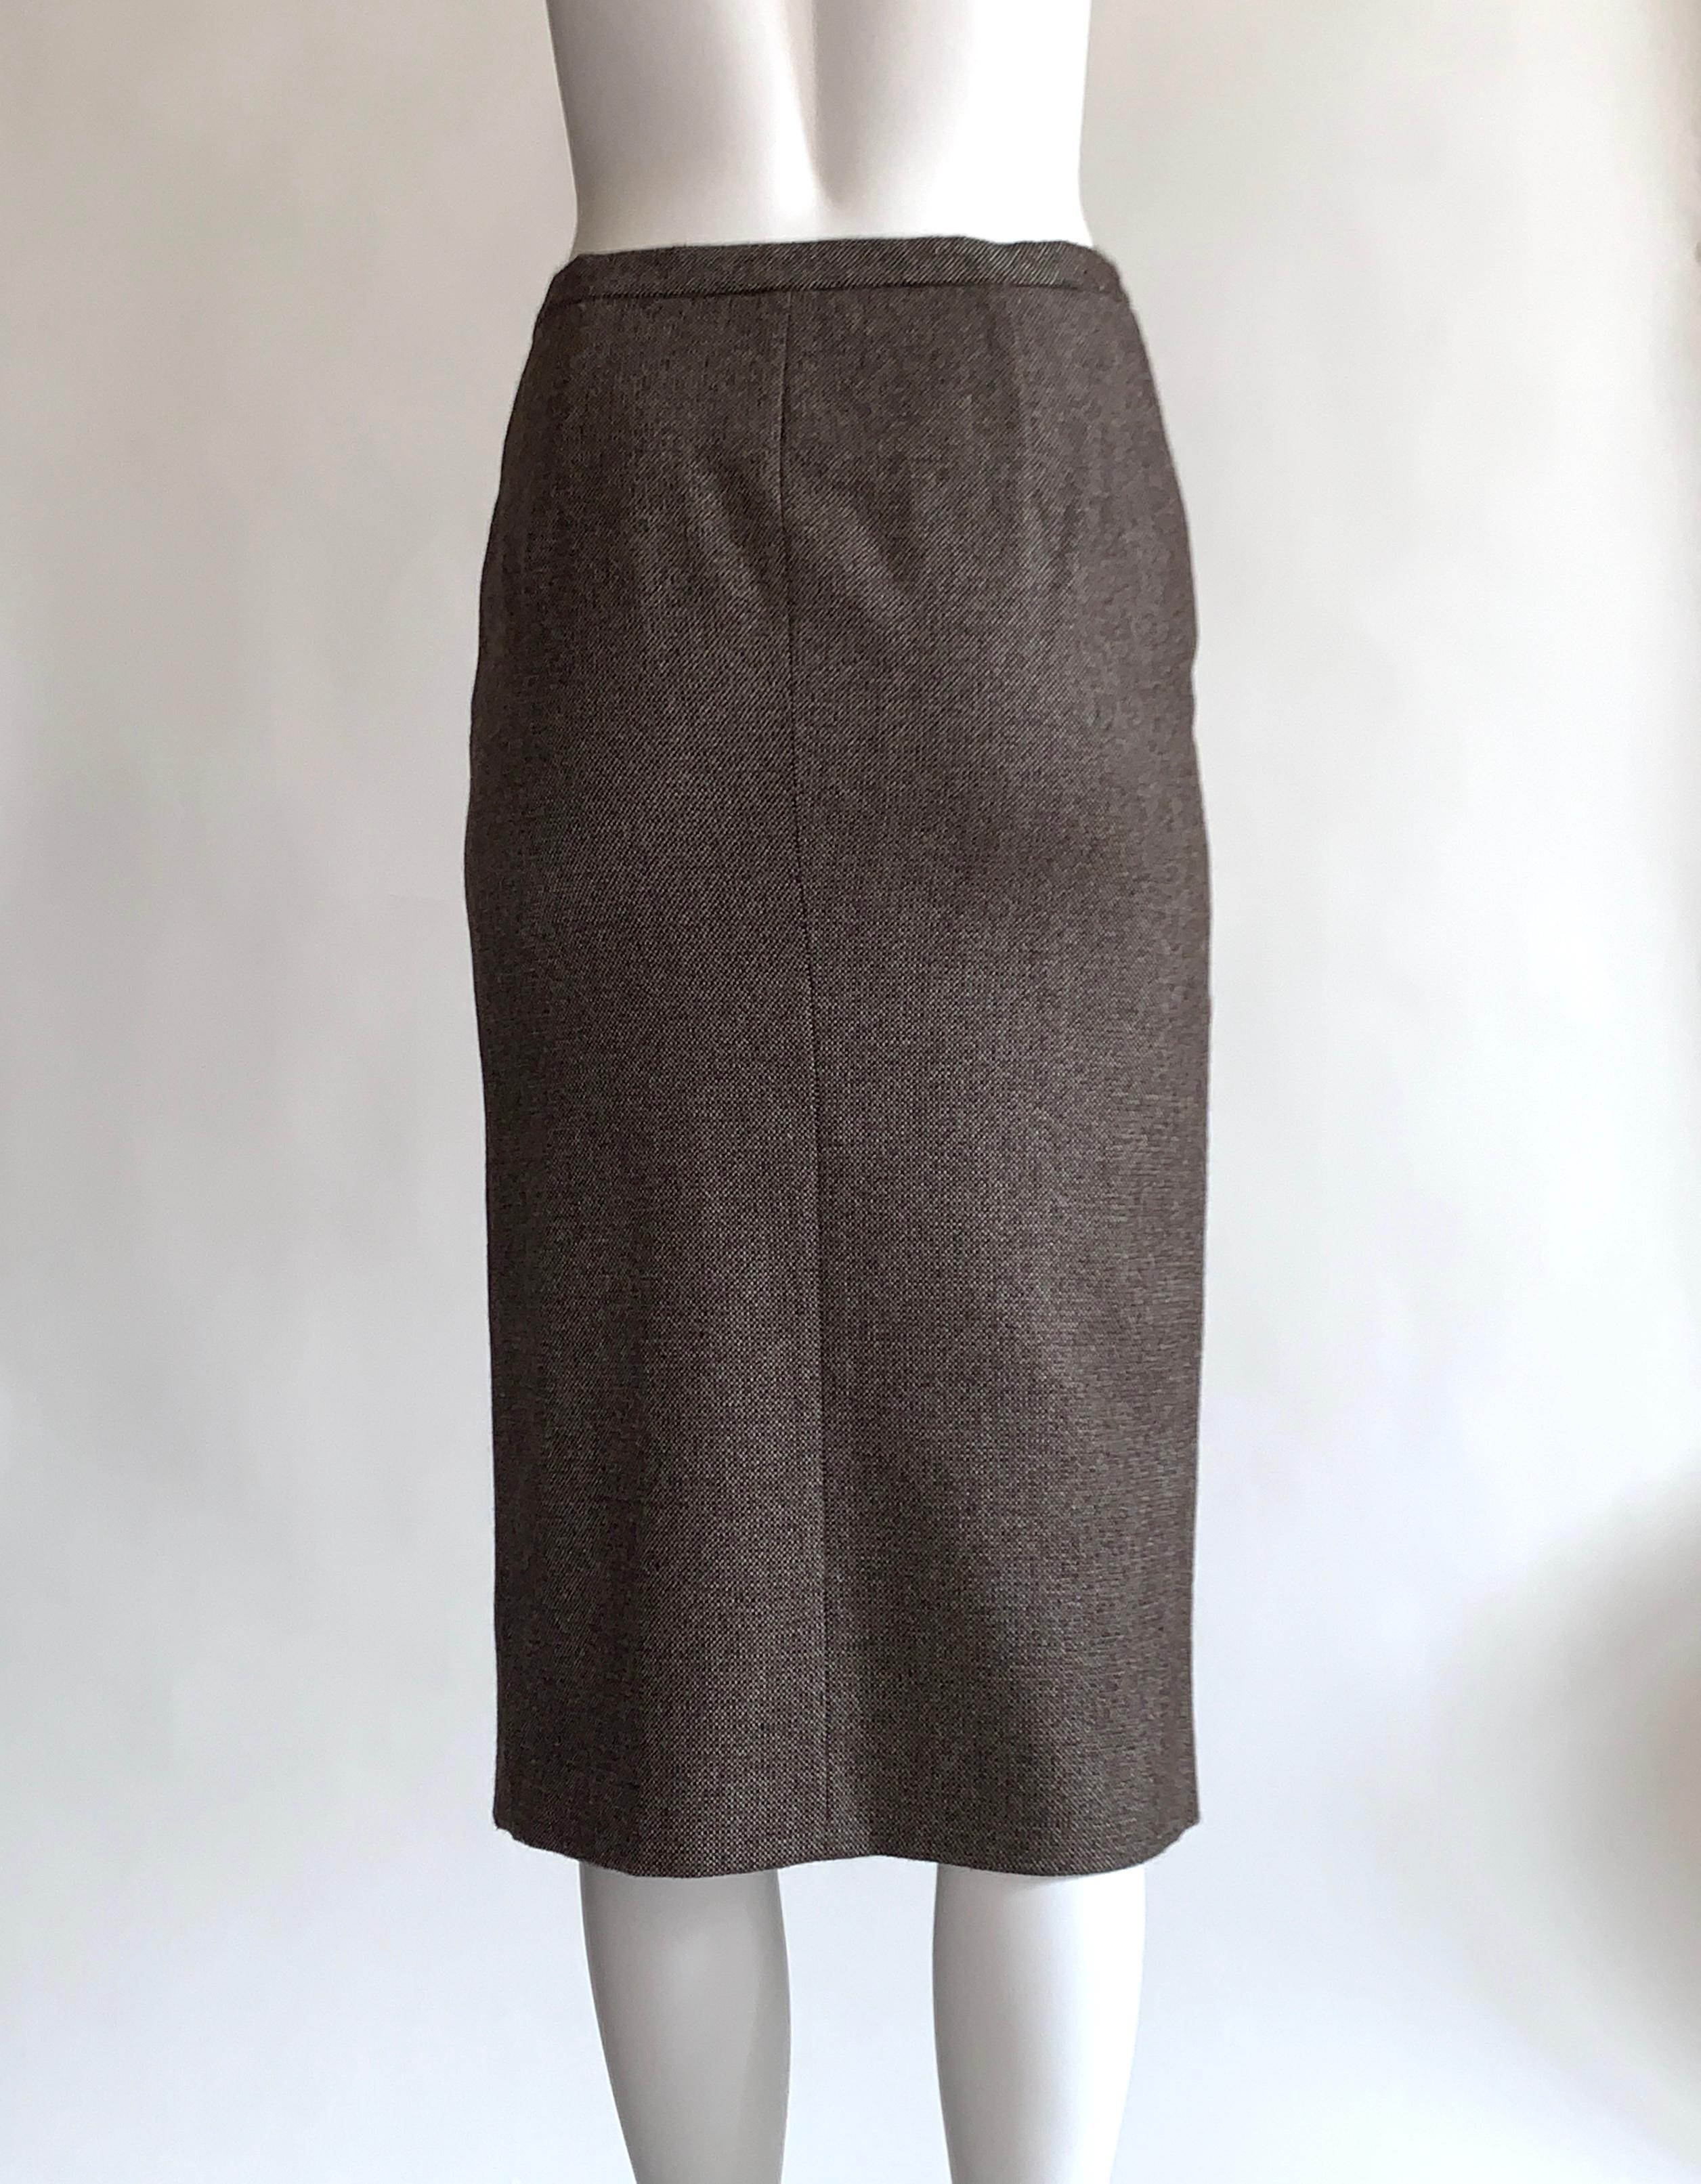 brown tweed pencil skirt